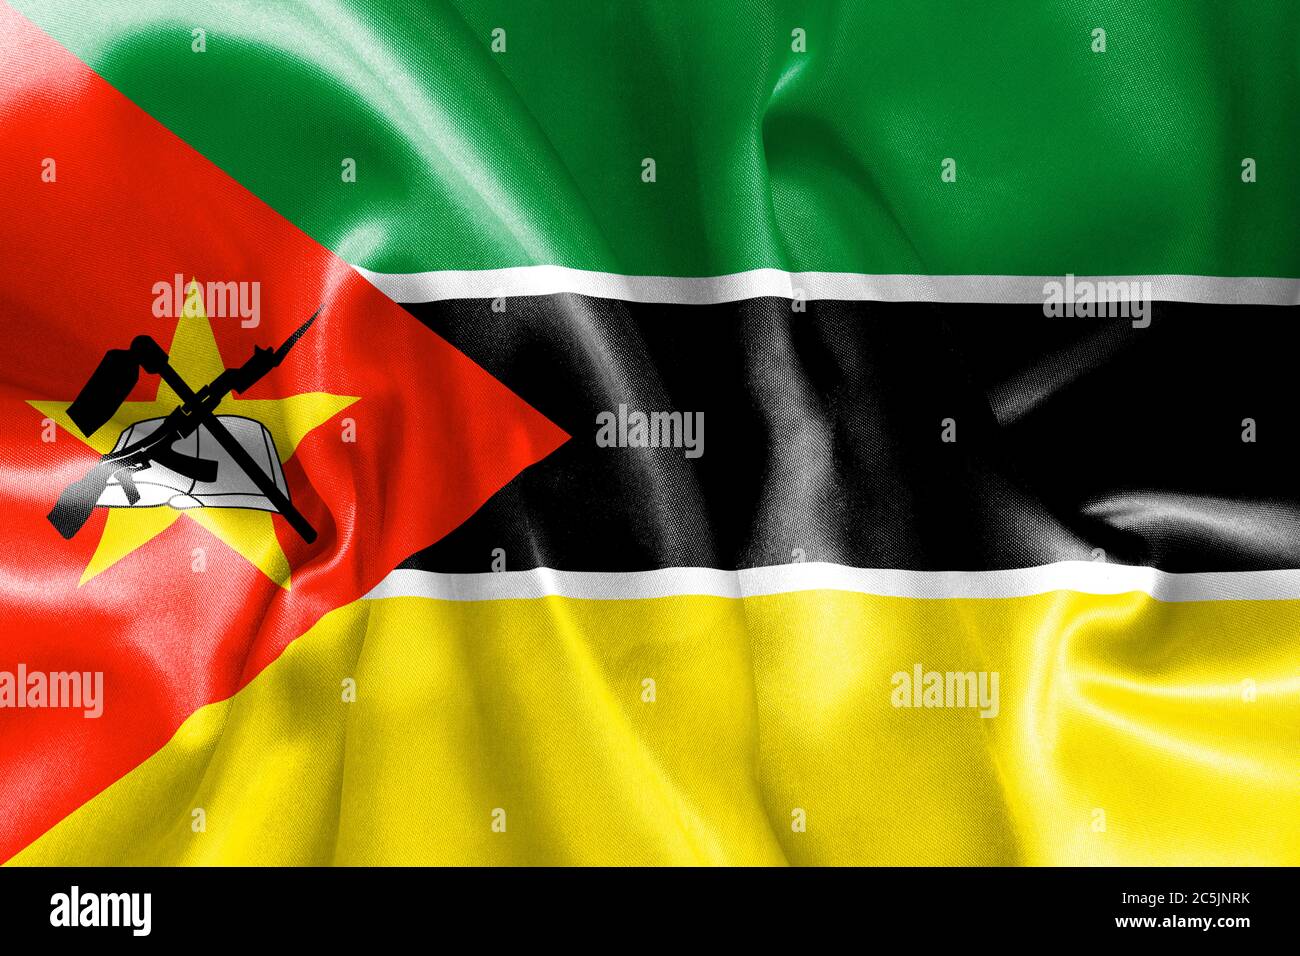 La texture du drapeau du Mozambique s'est froissée et s'est émiettée de lumière et d'ombres Banque D'Images